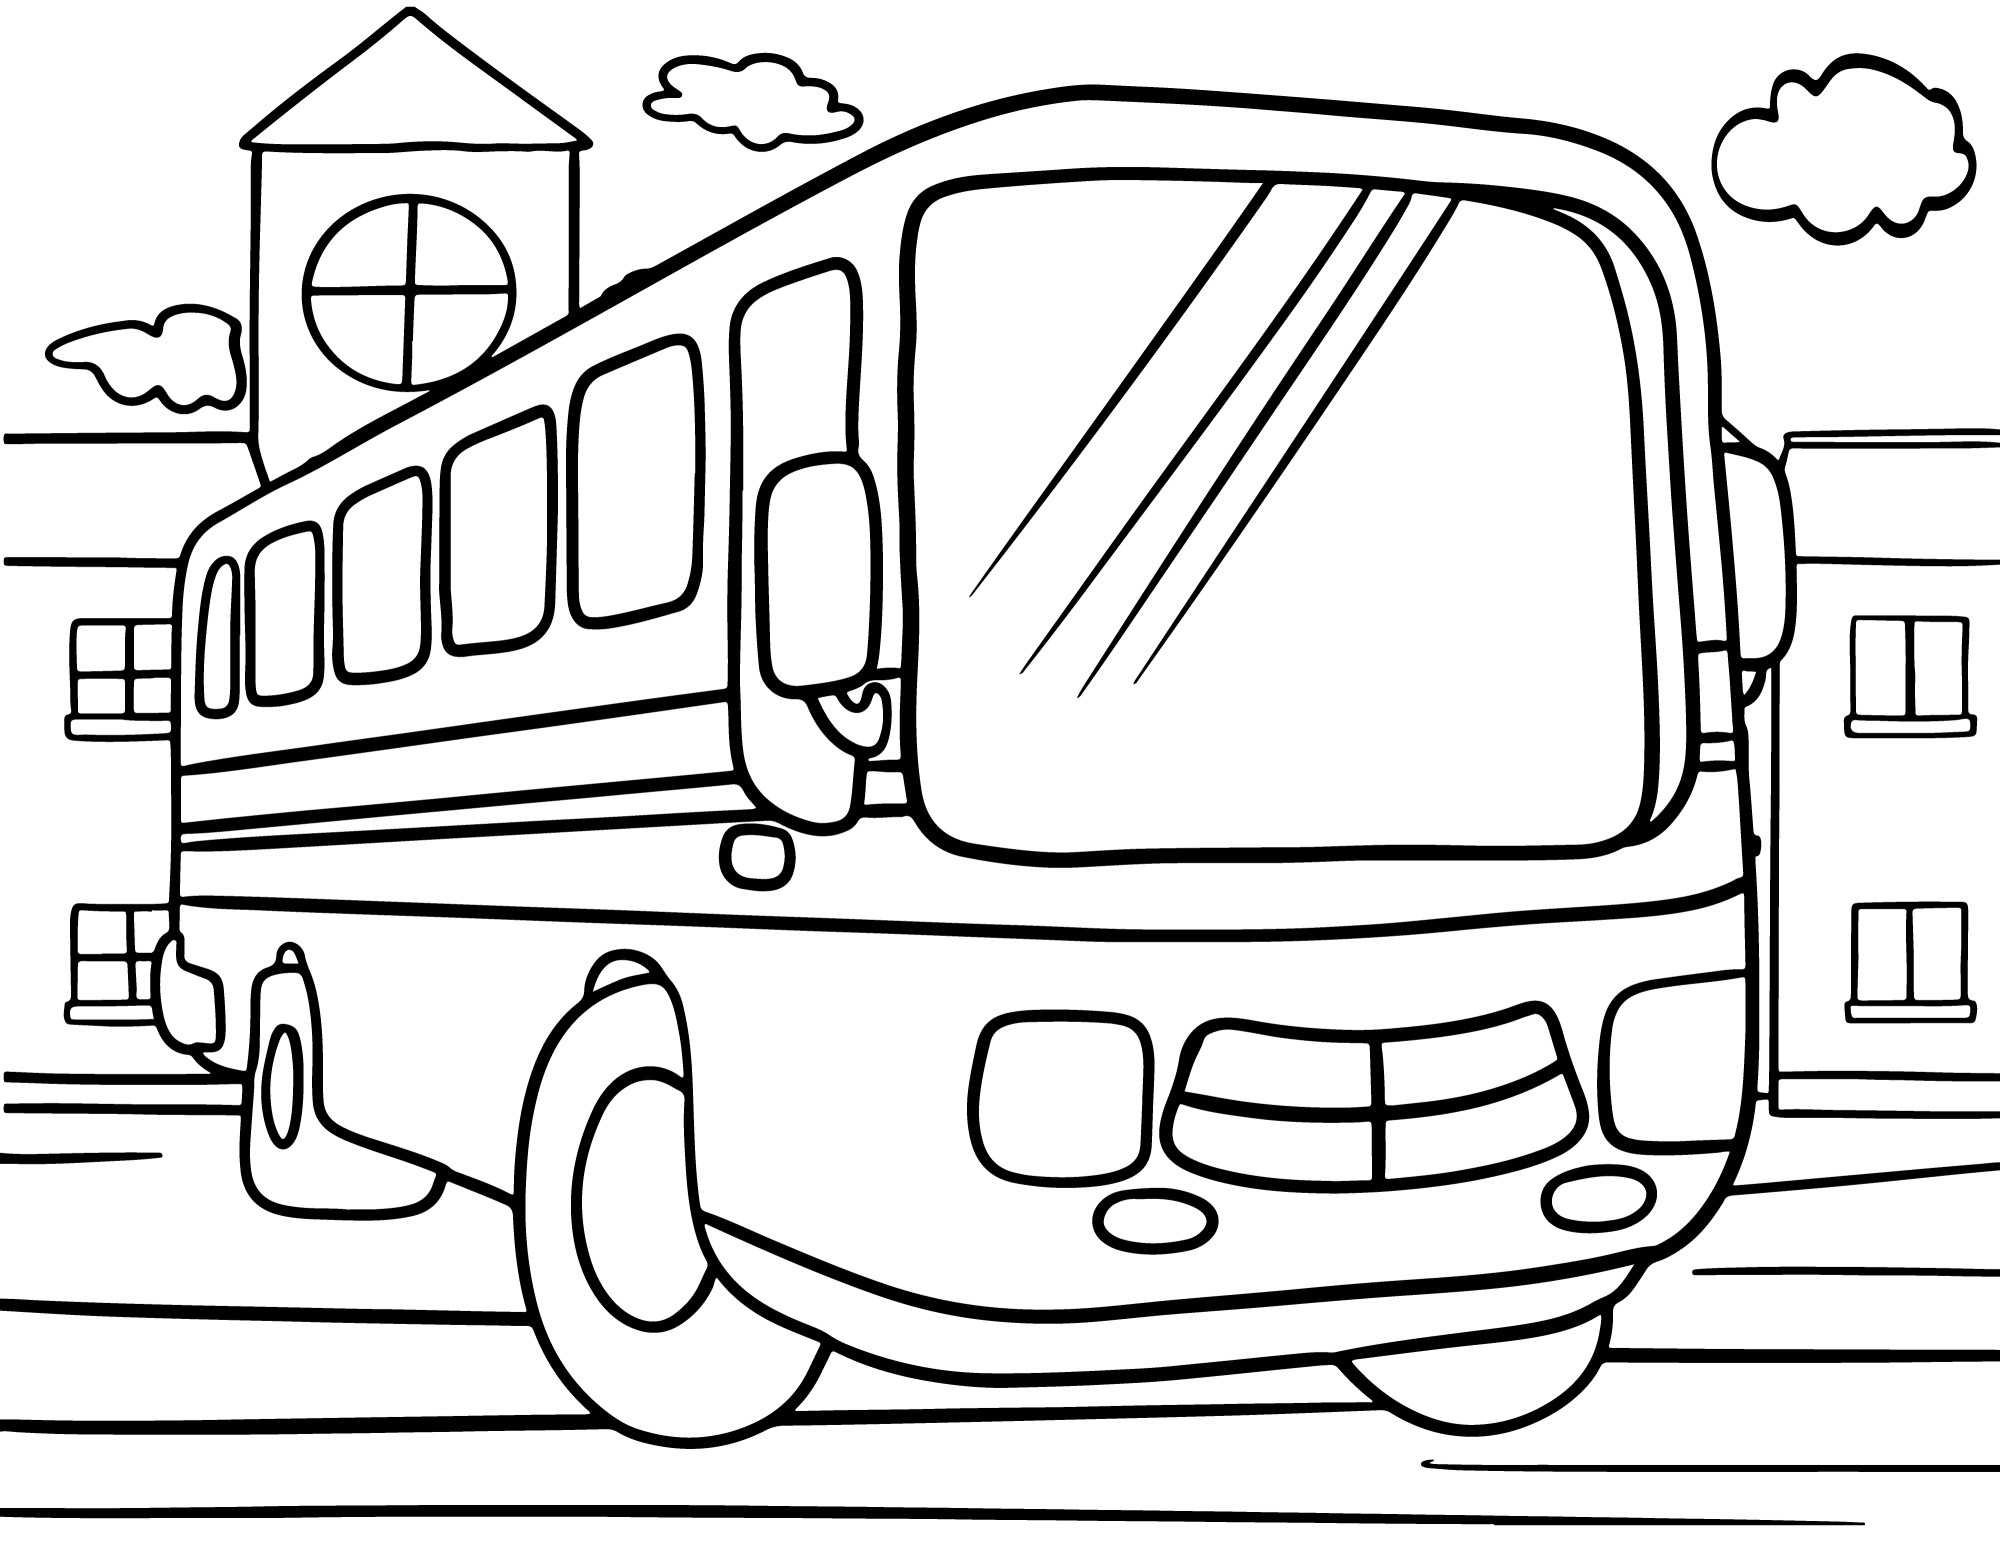 Раскраска для детей: городской автобус стоит на дороге